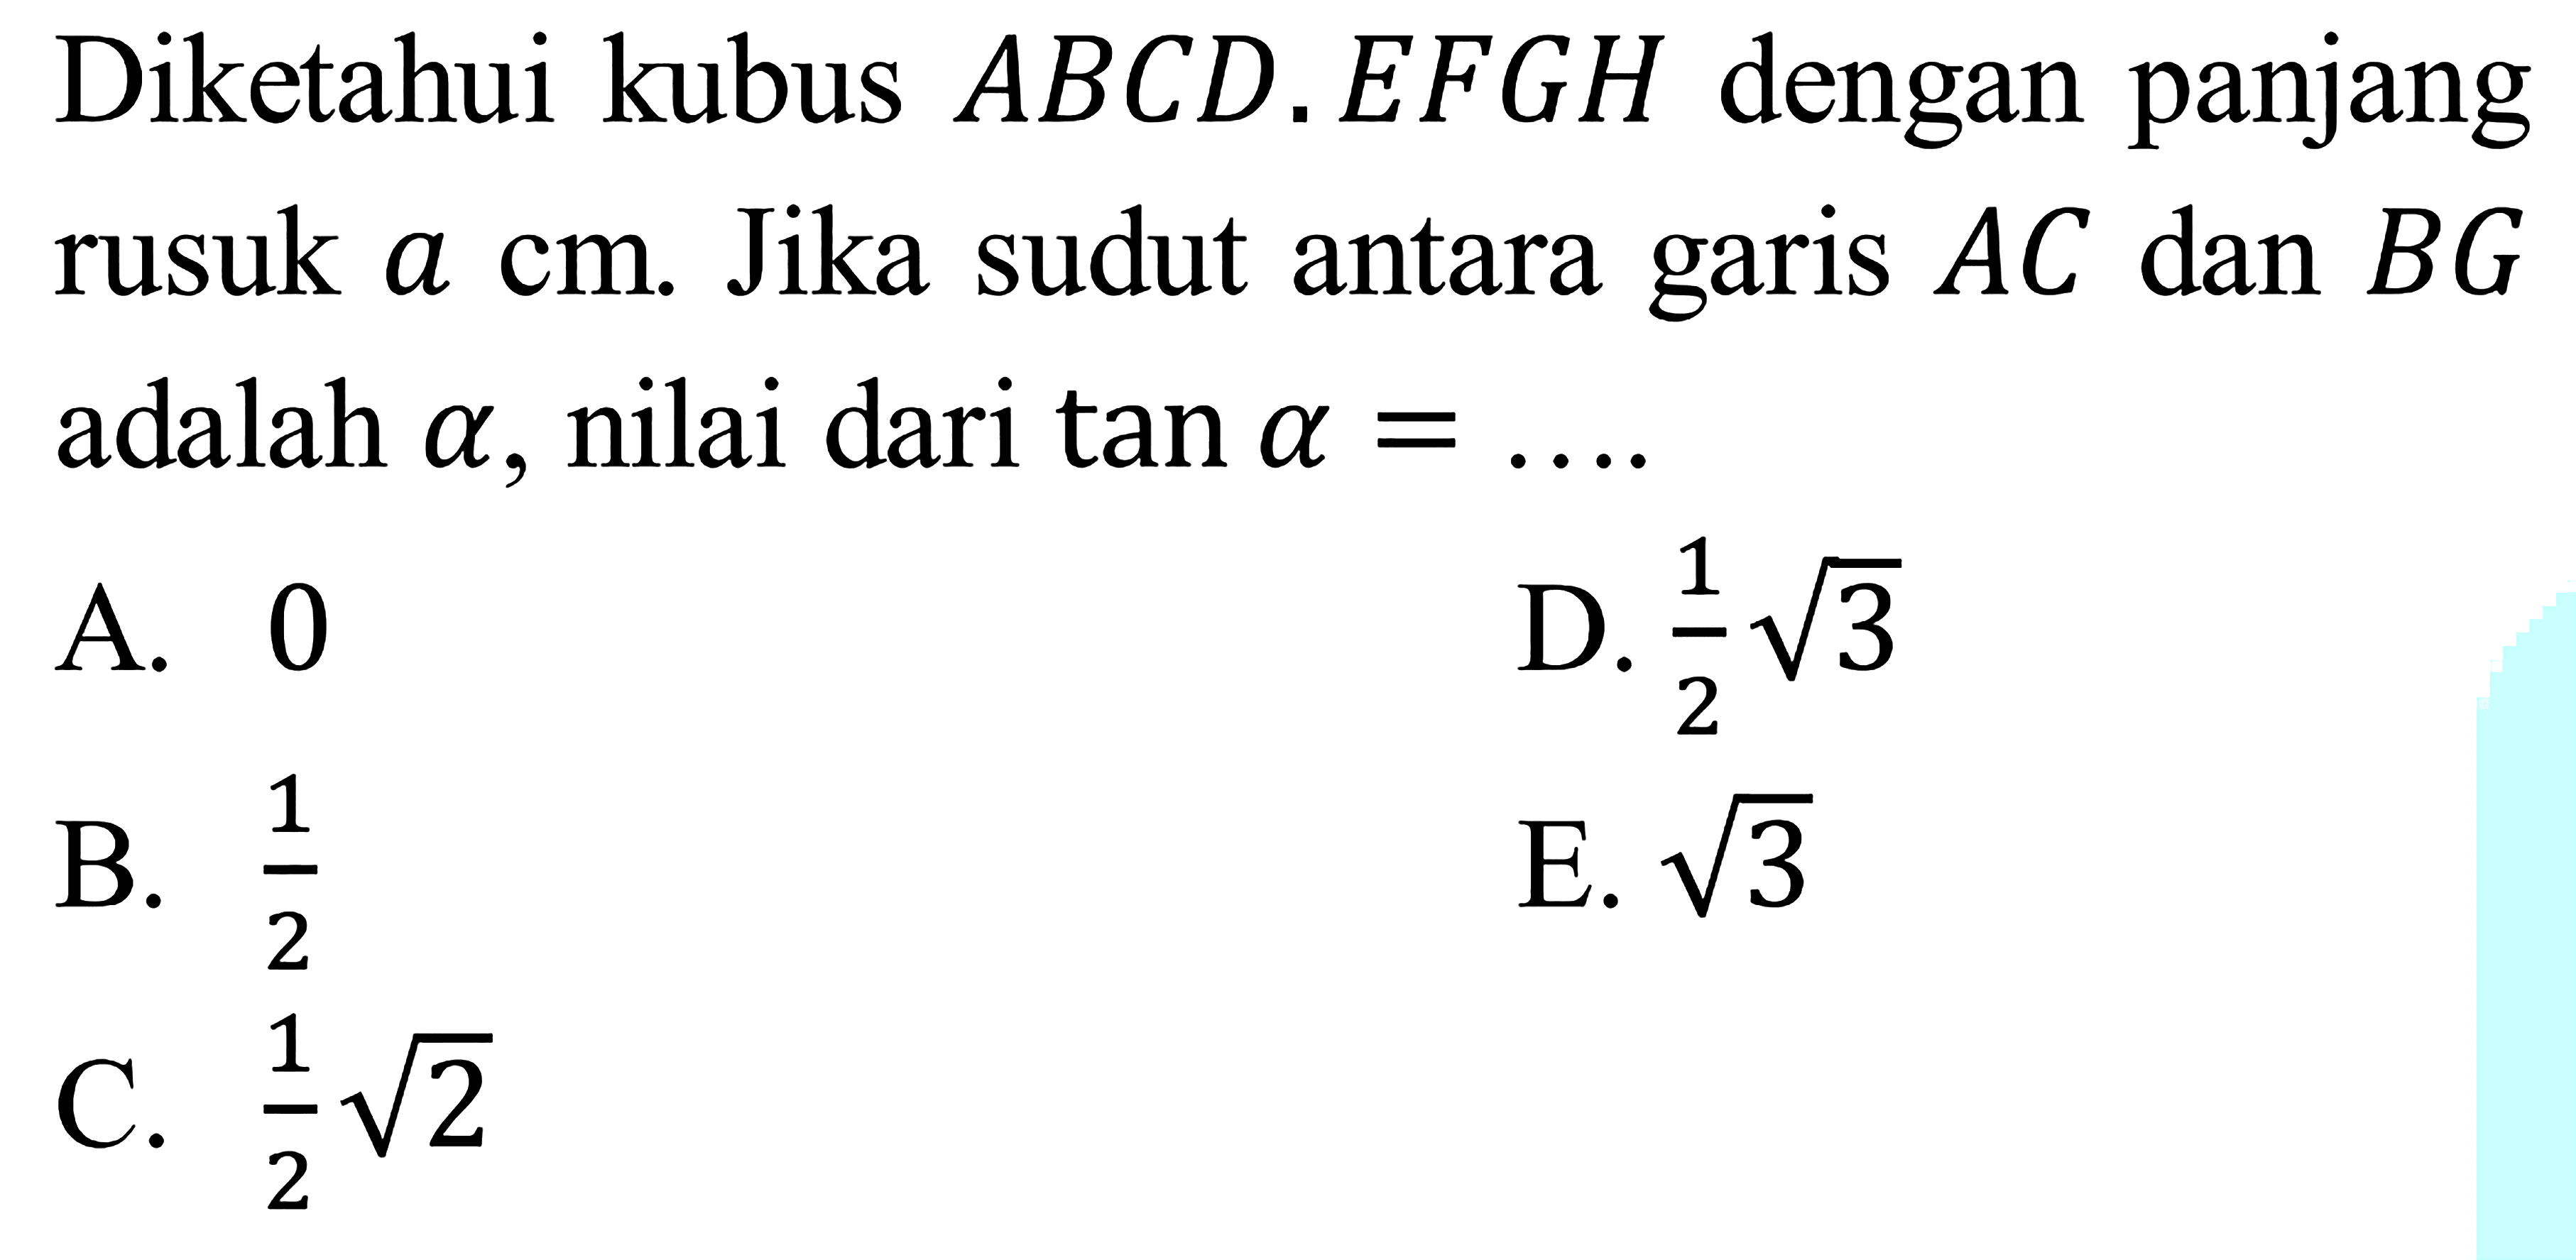 Diketahui kubus ABCD.EFGH dengan panjang rusuk a cm. Jika sudut antara garis AC dan BG adalah alpha, nilai dari tan alpha = ....